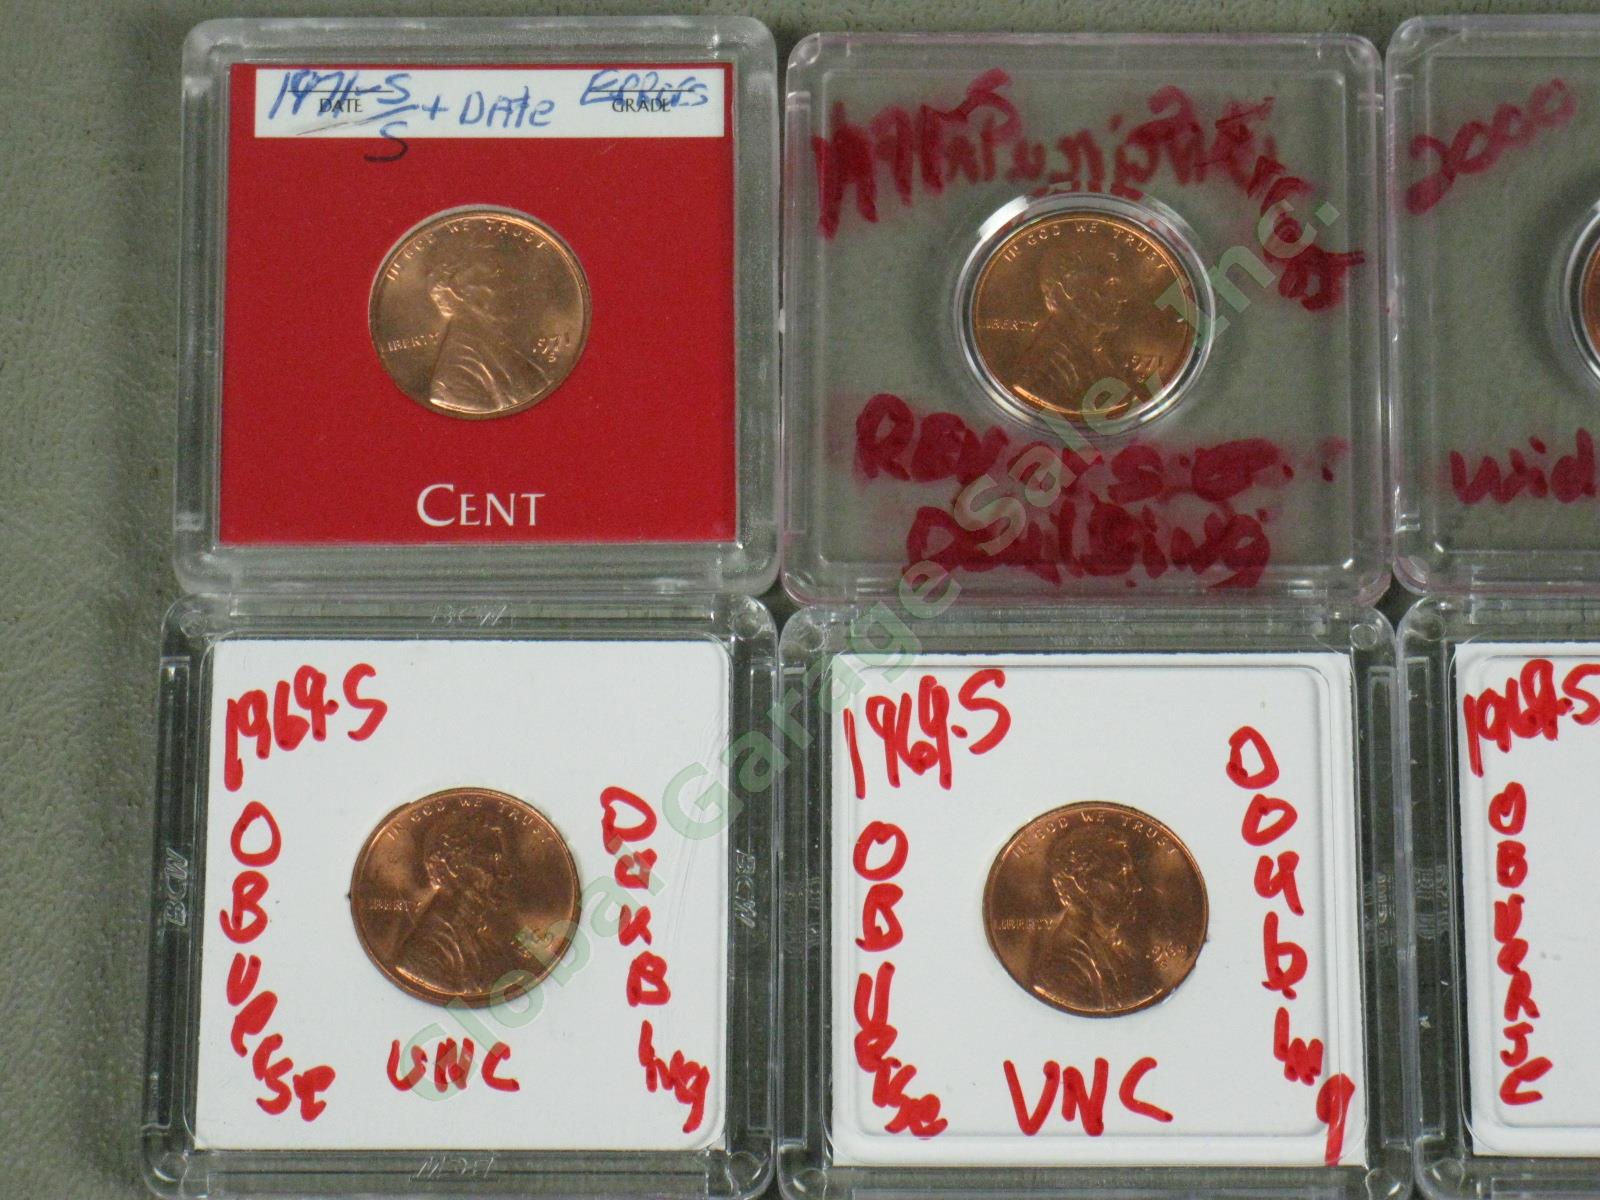 36 US Penny Mint Error Lot 12 UNC 1907 1917 1969-S ++ Doubles Die Cracks Wide AM 7